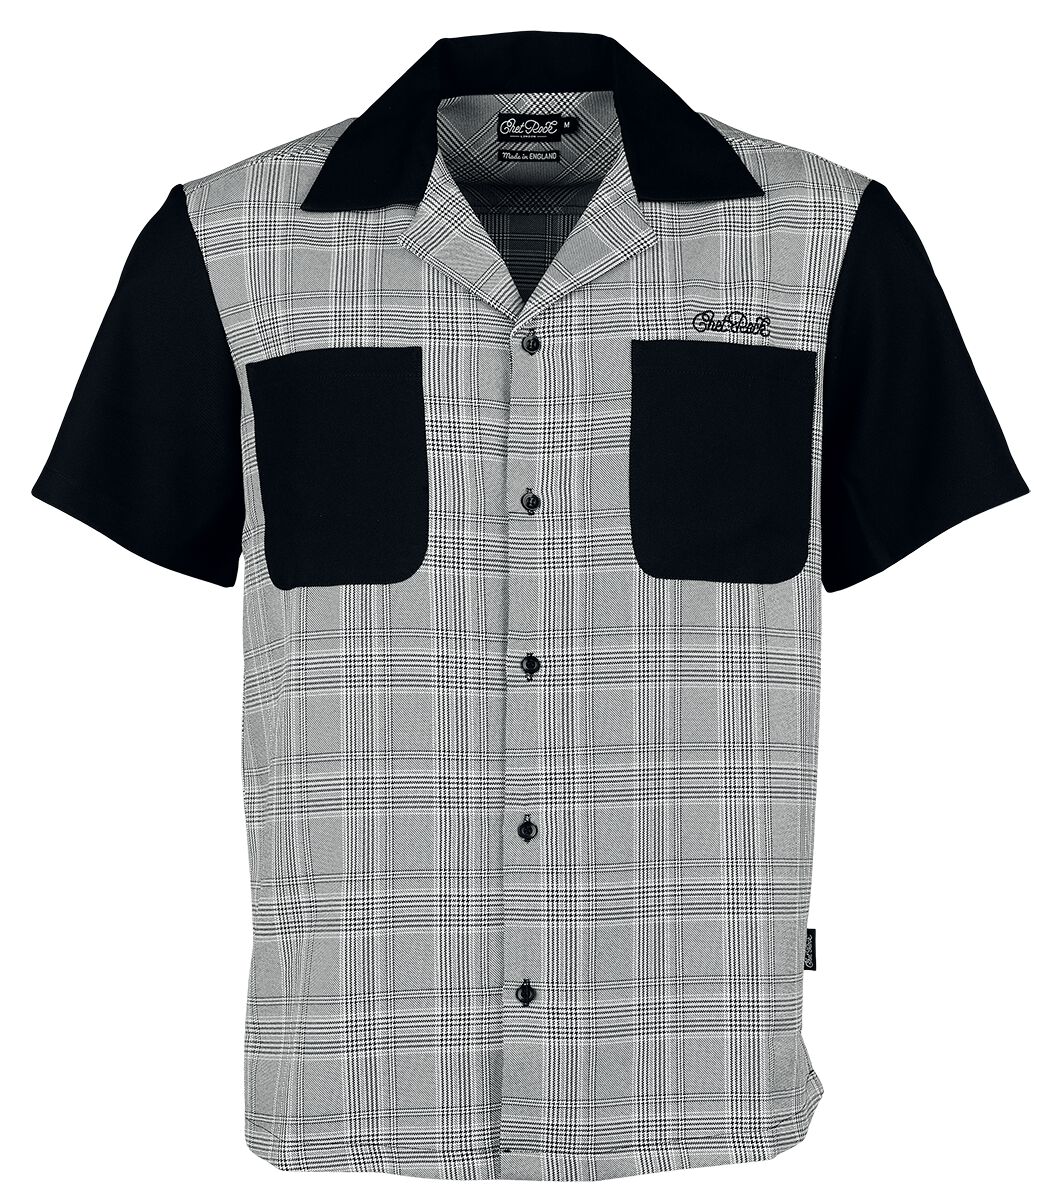 Chet Rock - Rockabilly Kurzarmhemd - Arlo Shirt - S bis 4XL - für Männer - Größe L - schwarz/weiß von Chet Rock